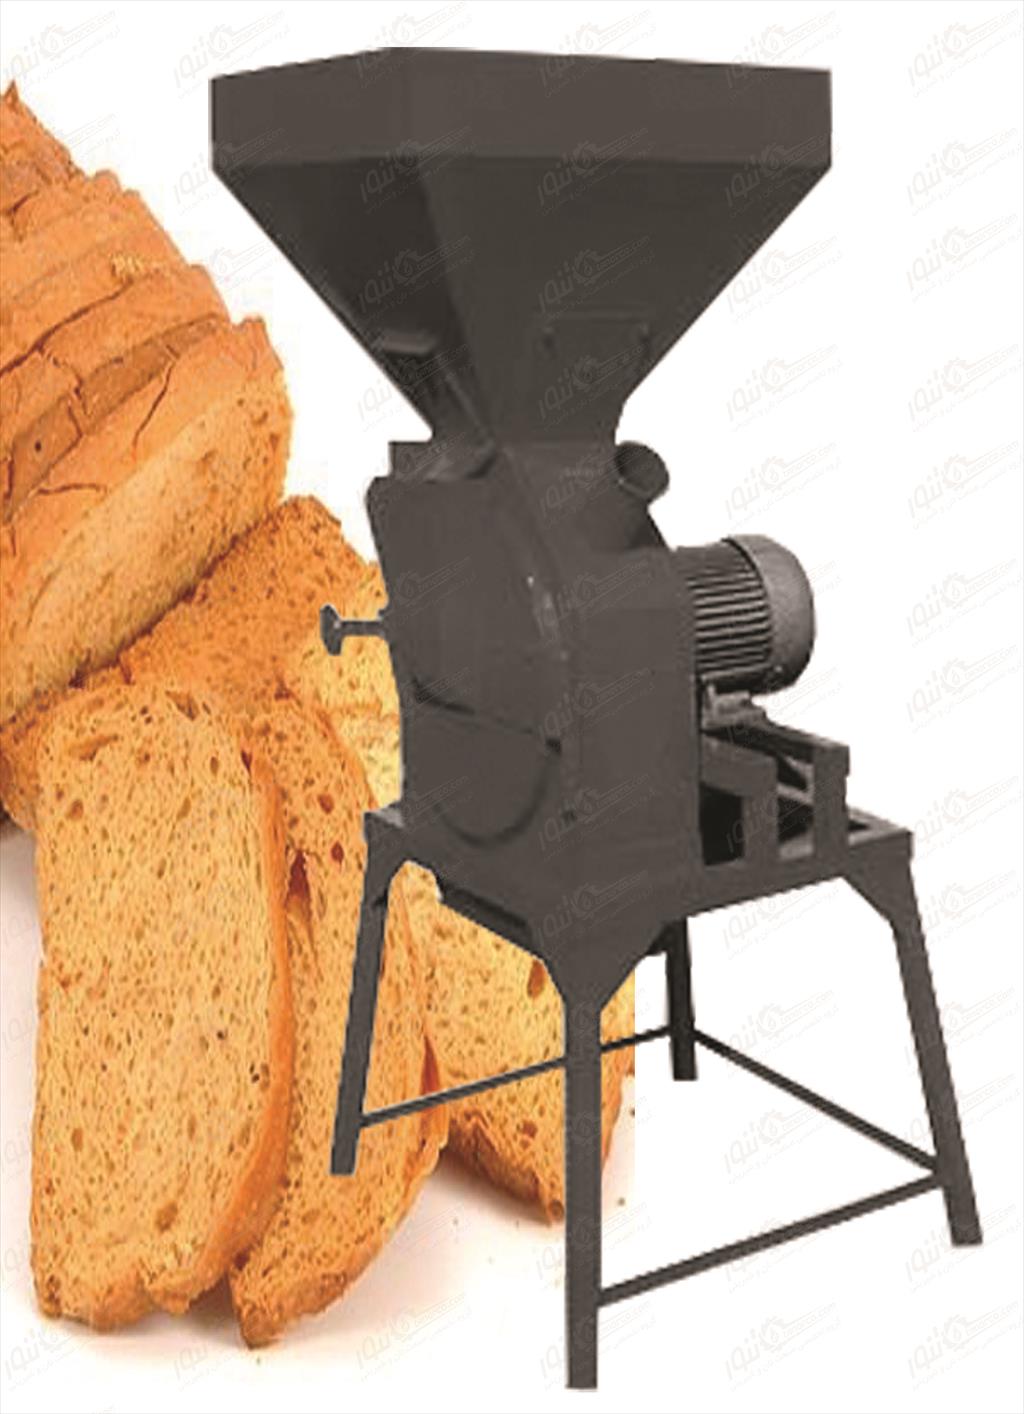 <br/>آﺳﯿﺎب ﻧﺎن دستگاهی برای خرد کردن نانهای خشک شده ،جهت استفاده از پودر نان ( آرد نان ) با مصارف خوراکی میباشداین آردها که با نام آرد سوخاری ( پودر سوخار industry industrial-machinery industrial-machinery